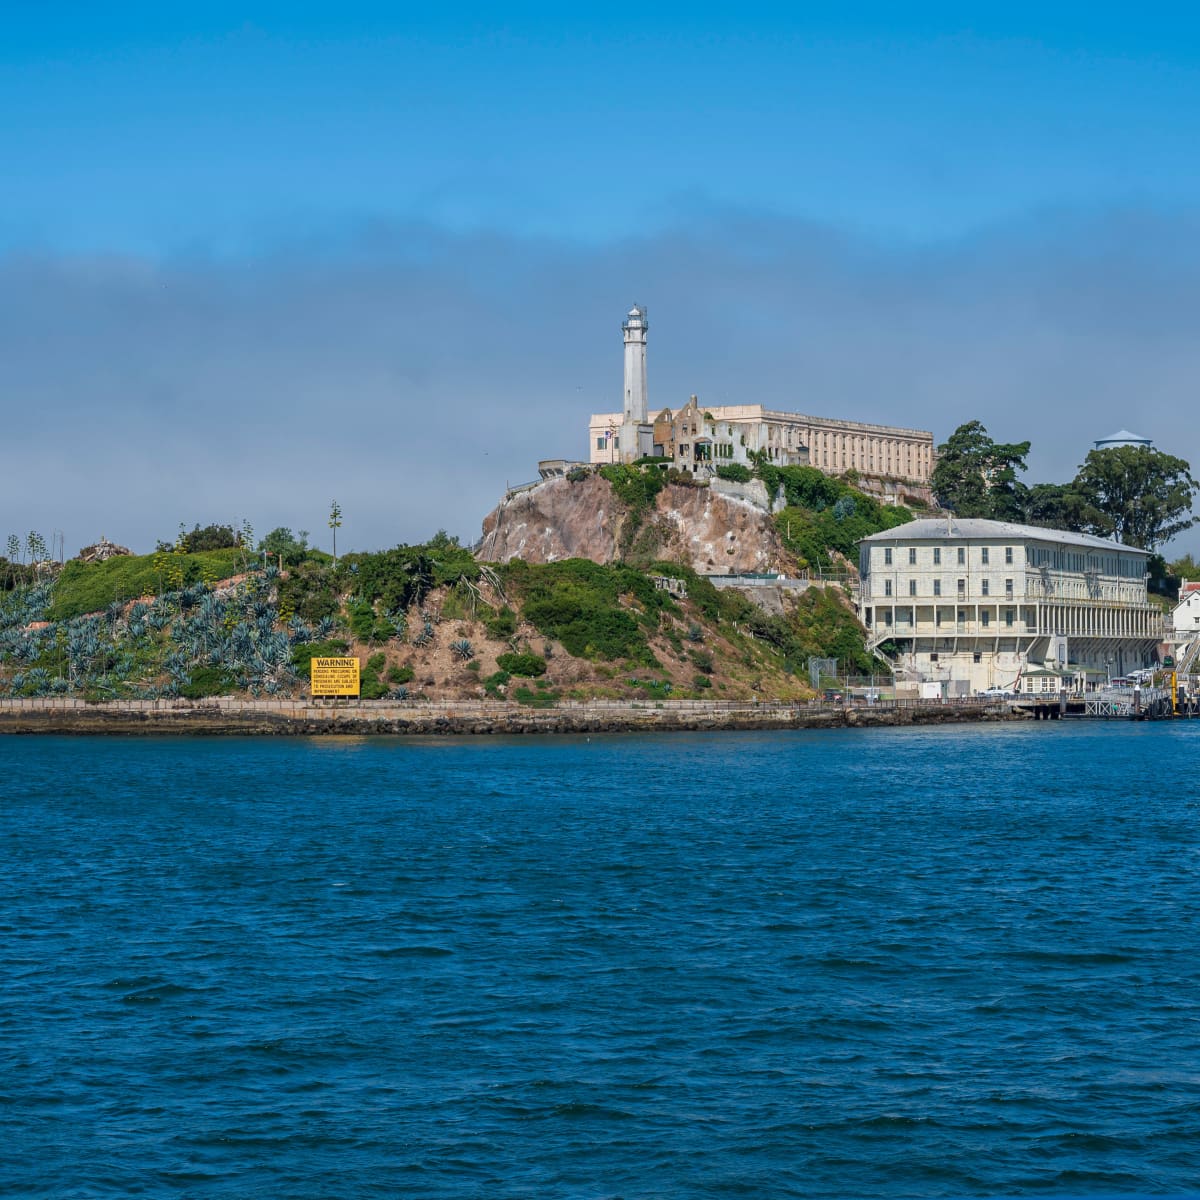 Alcatraz Prison Cell Escape Hole  Alcatraz, Alcatraz prison, Alcatraz  island prison